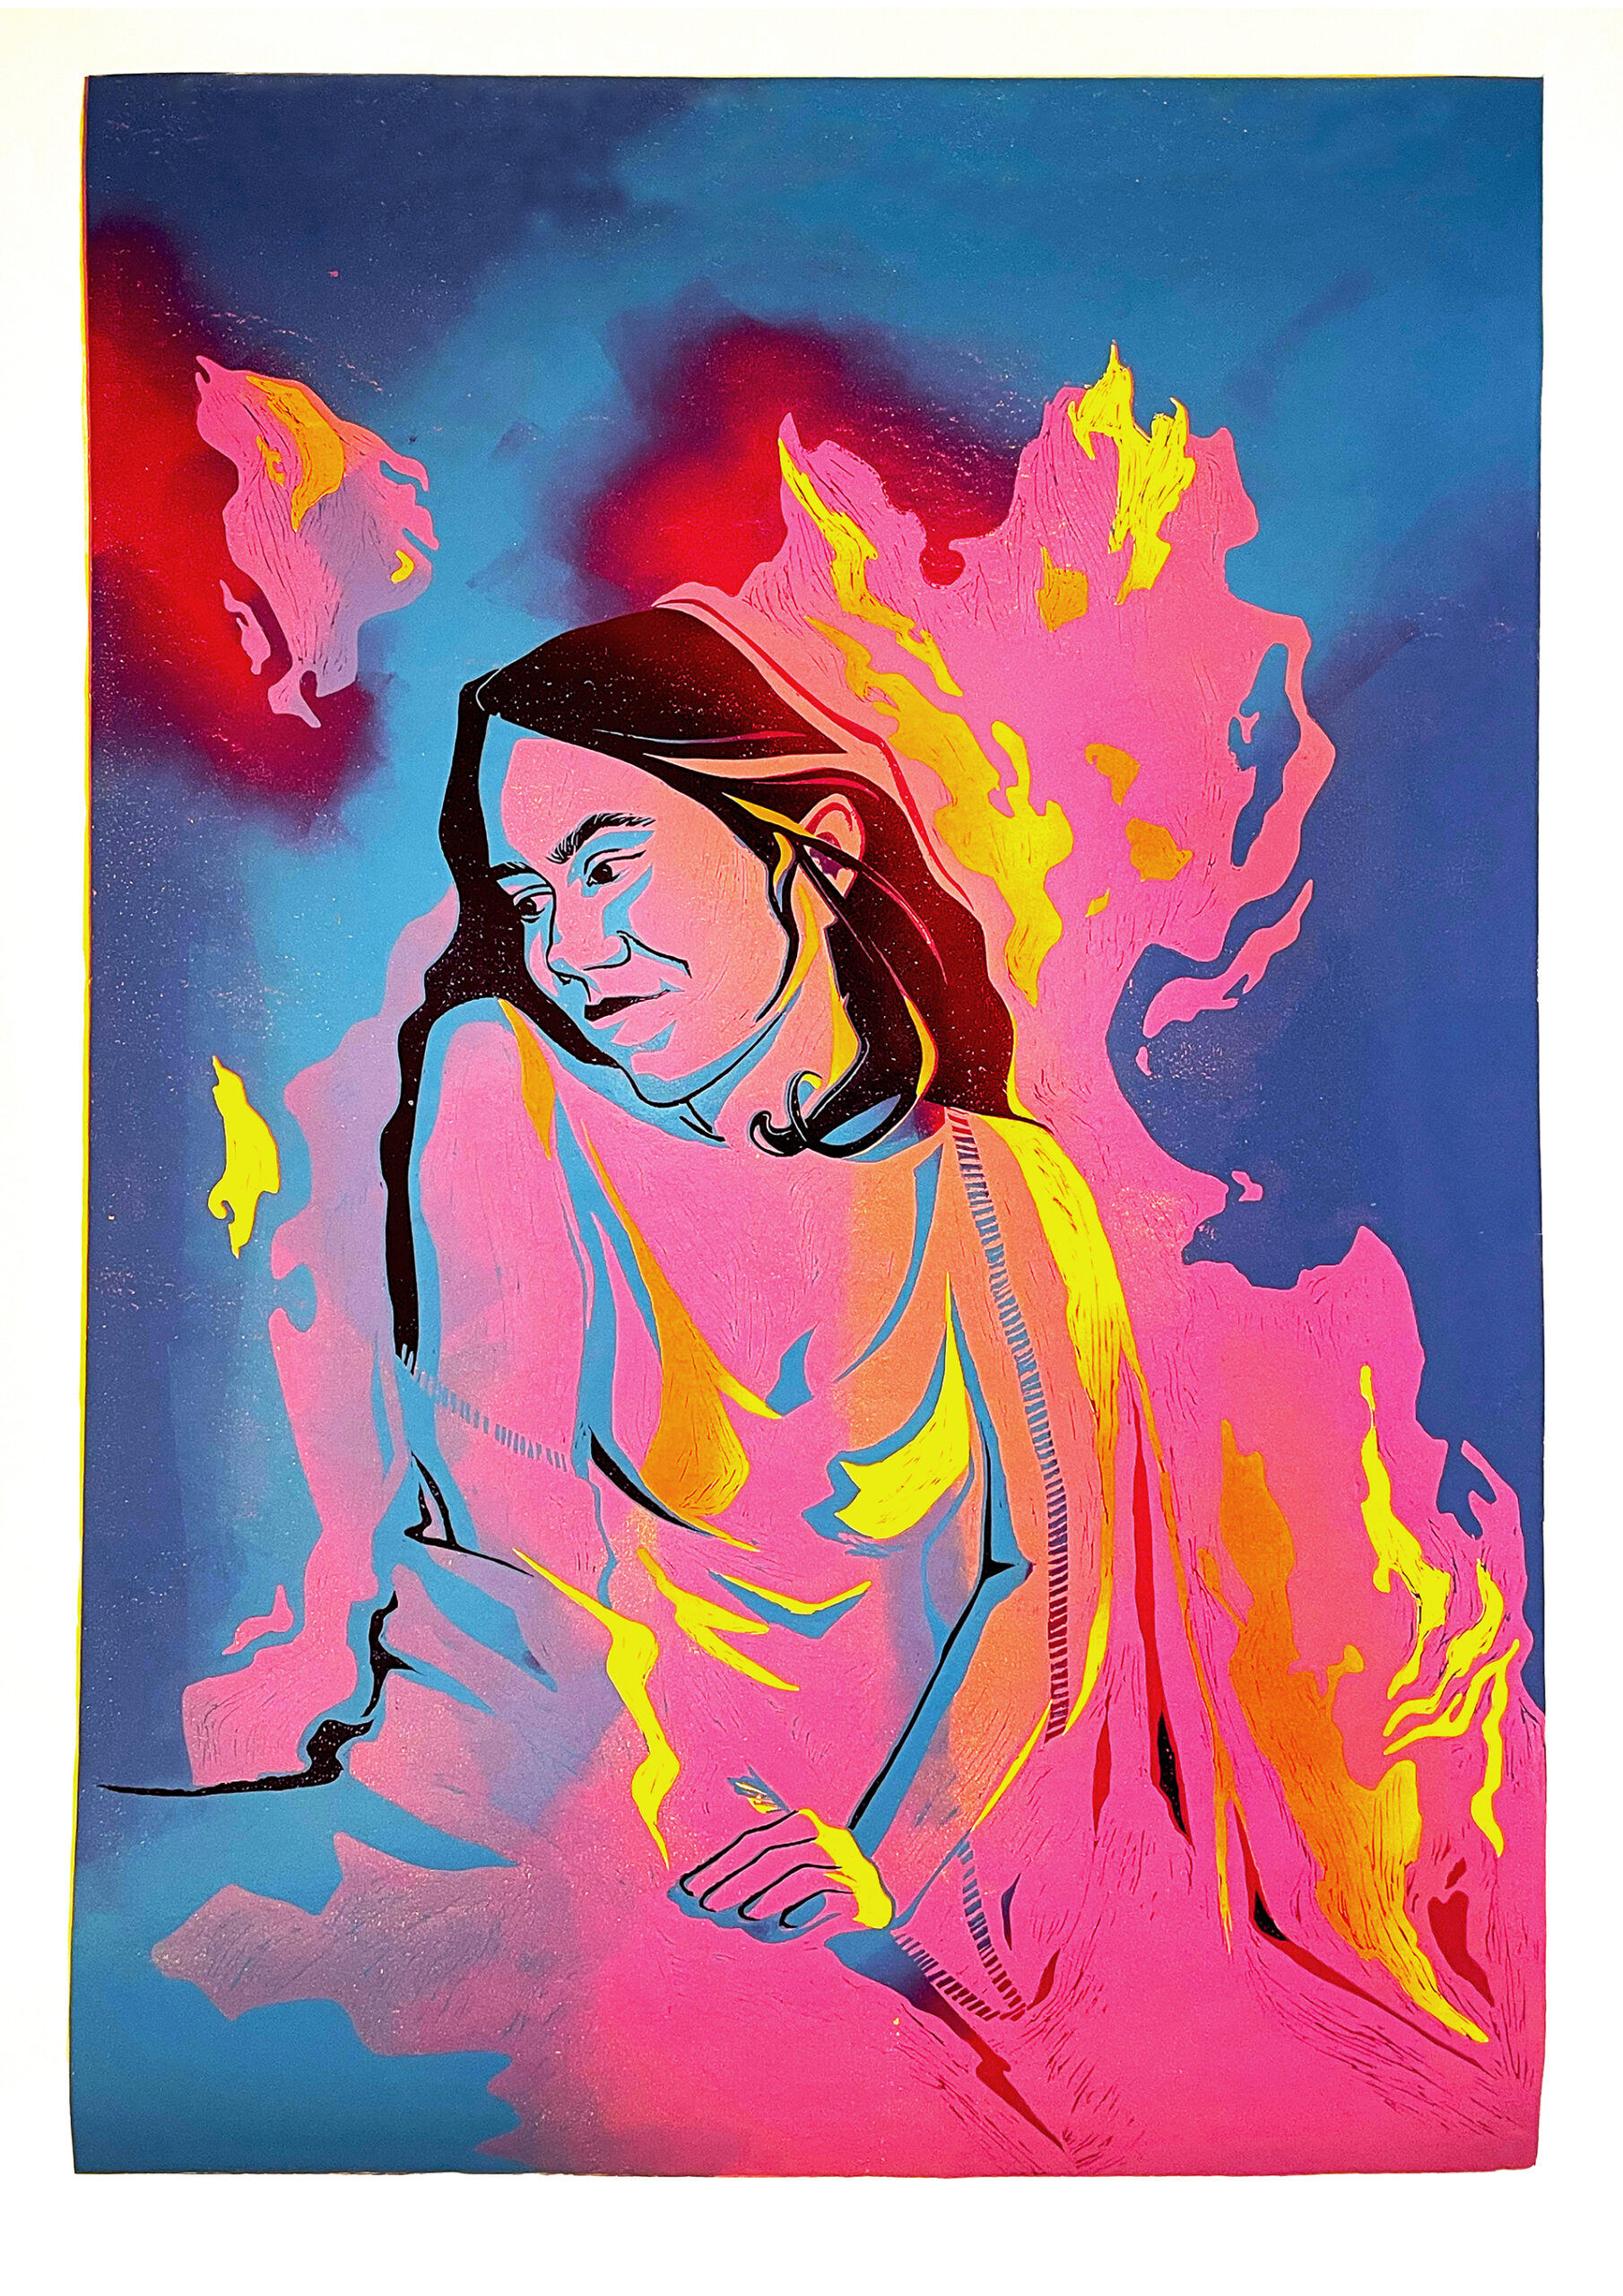 Fotografia przedstawia wielobarwny linoryt redukcyjny z kobietą pośród kolorowych płomieni.